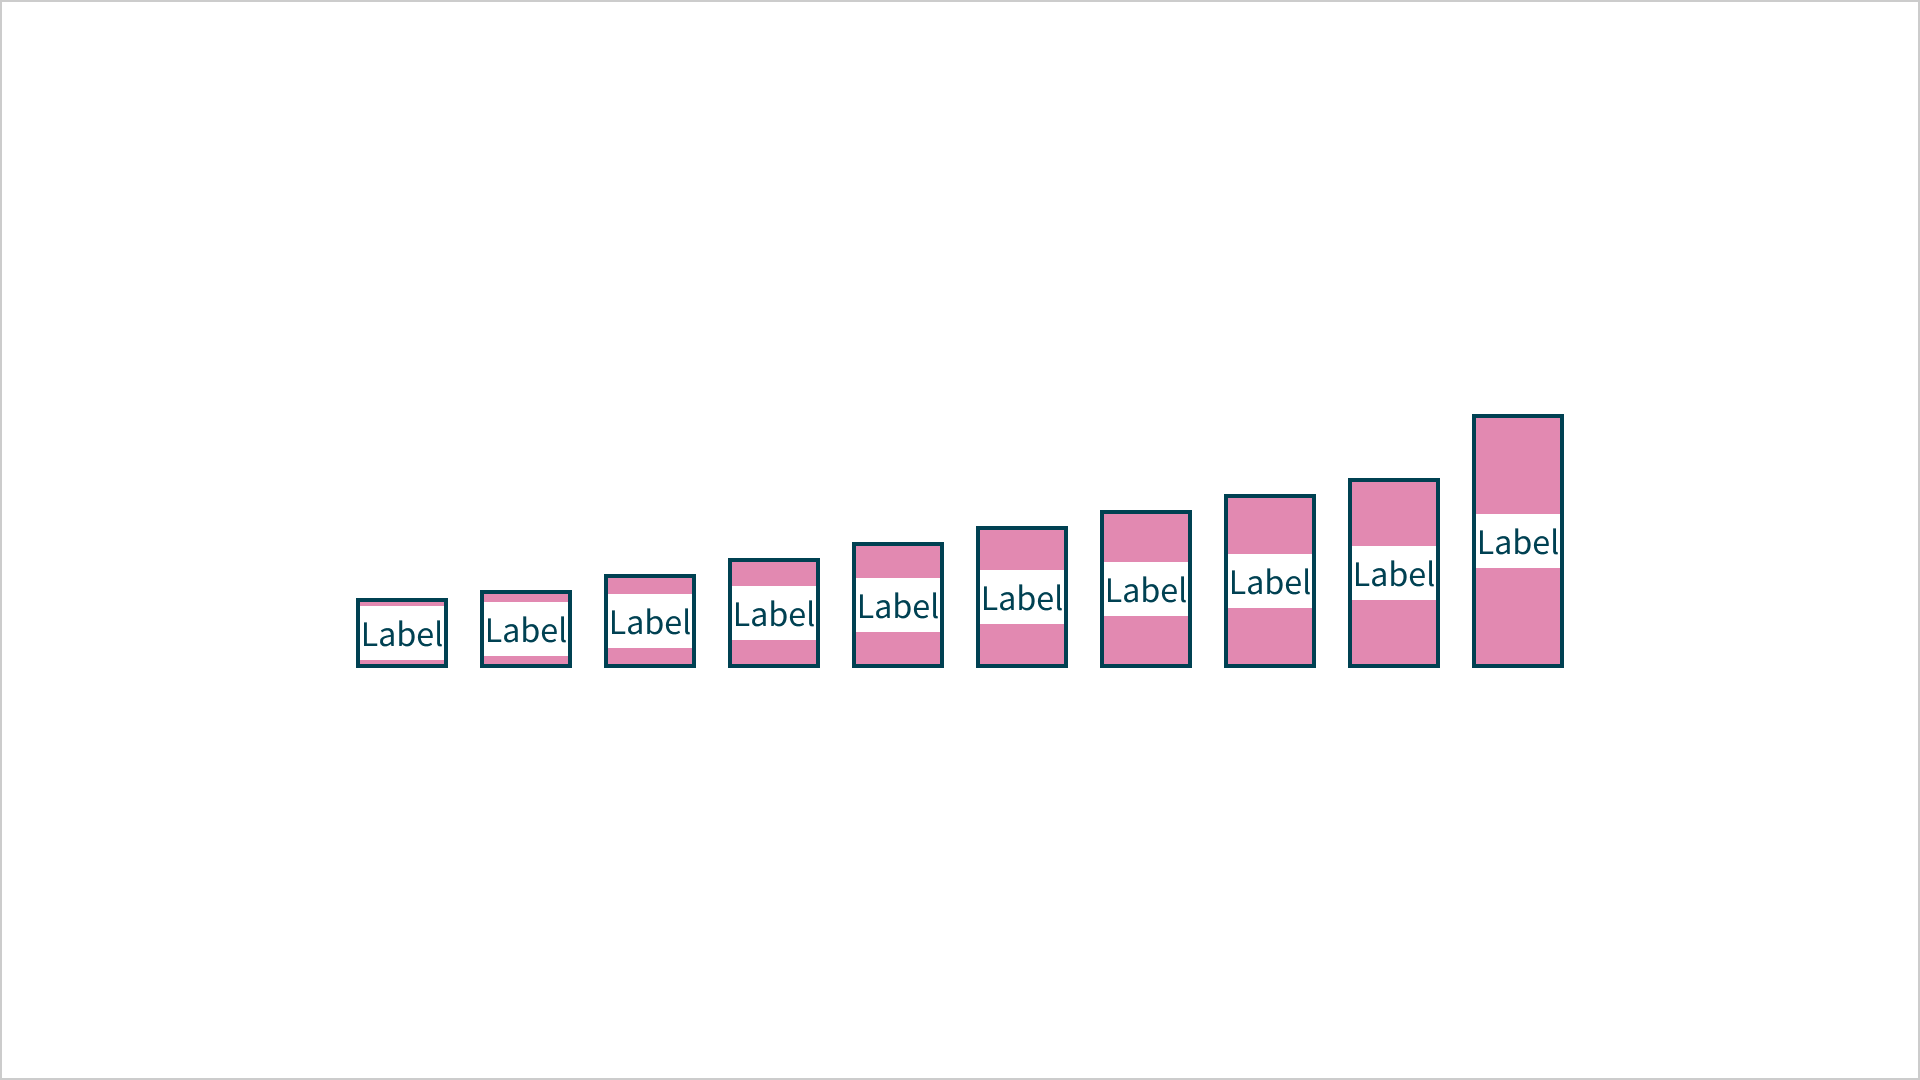 Spacing scale met horizontaal 10 blokjes. In elk blokje staat de tekst 'label'. Boven en onder de tekst staan roze vlakken. De vlakken worden per blokje hoger.